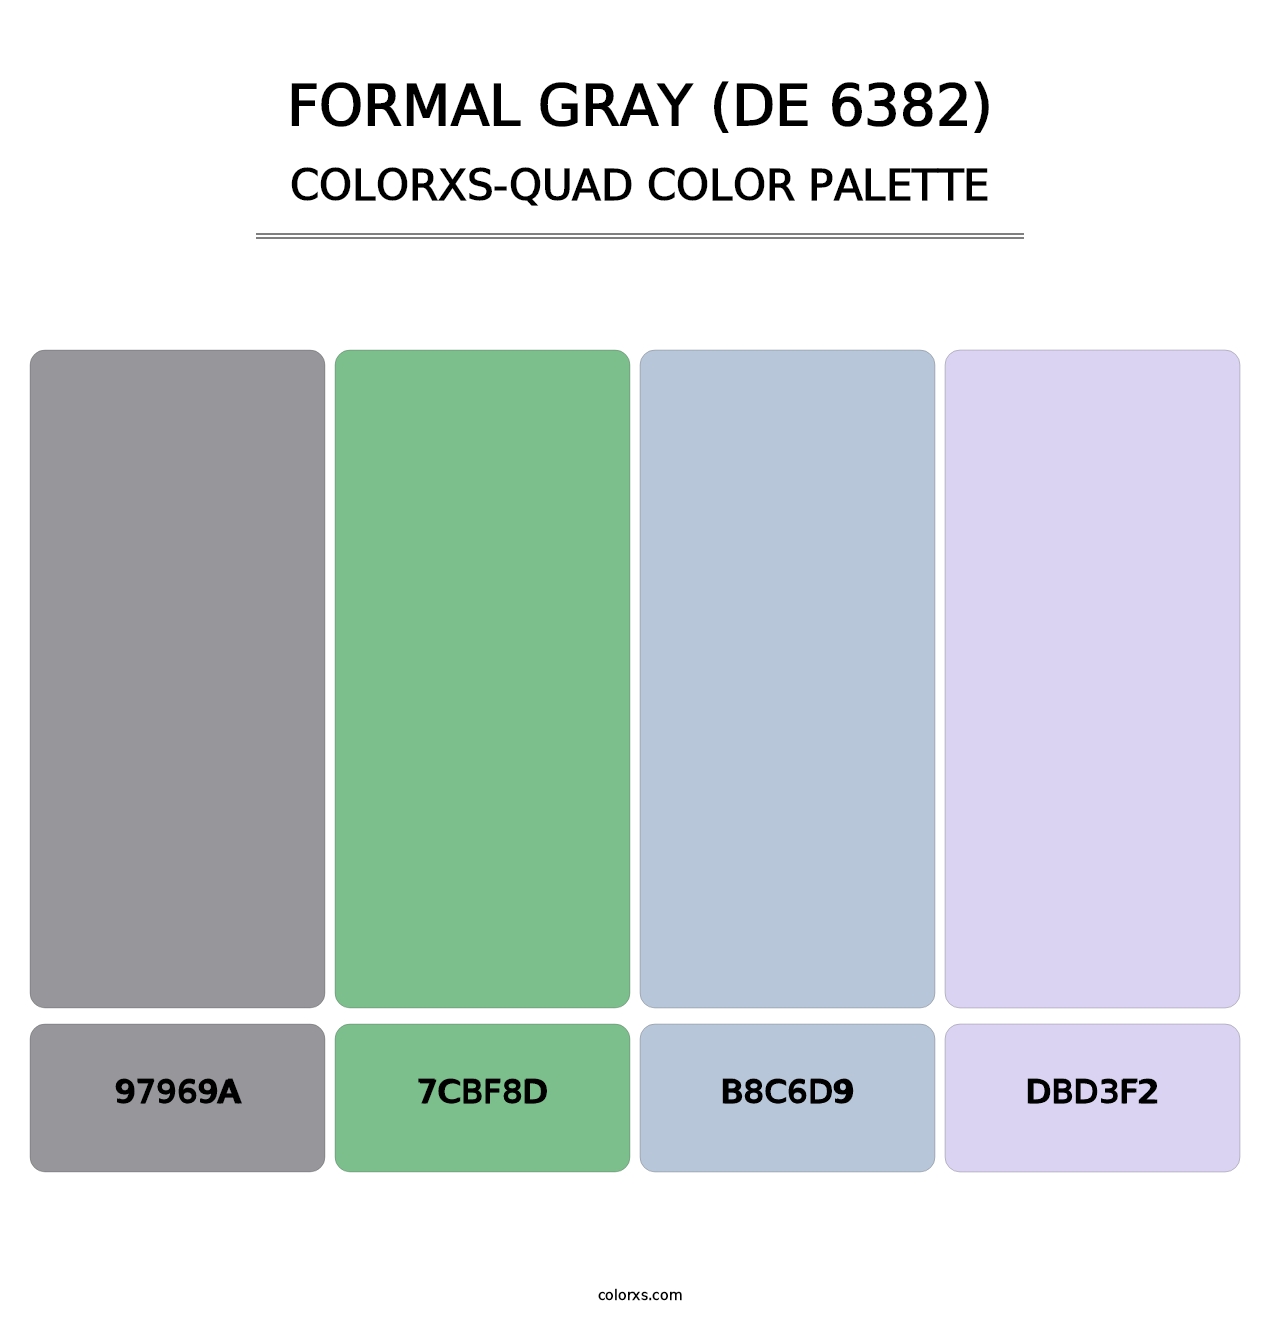 Formal Gray (DE 6382) - Colorxs Quad Palette